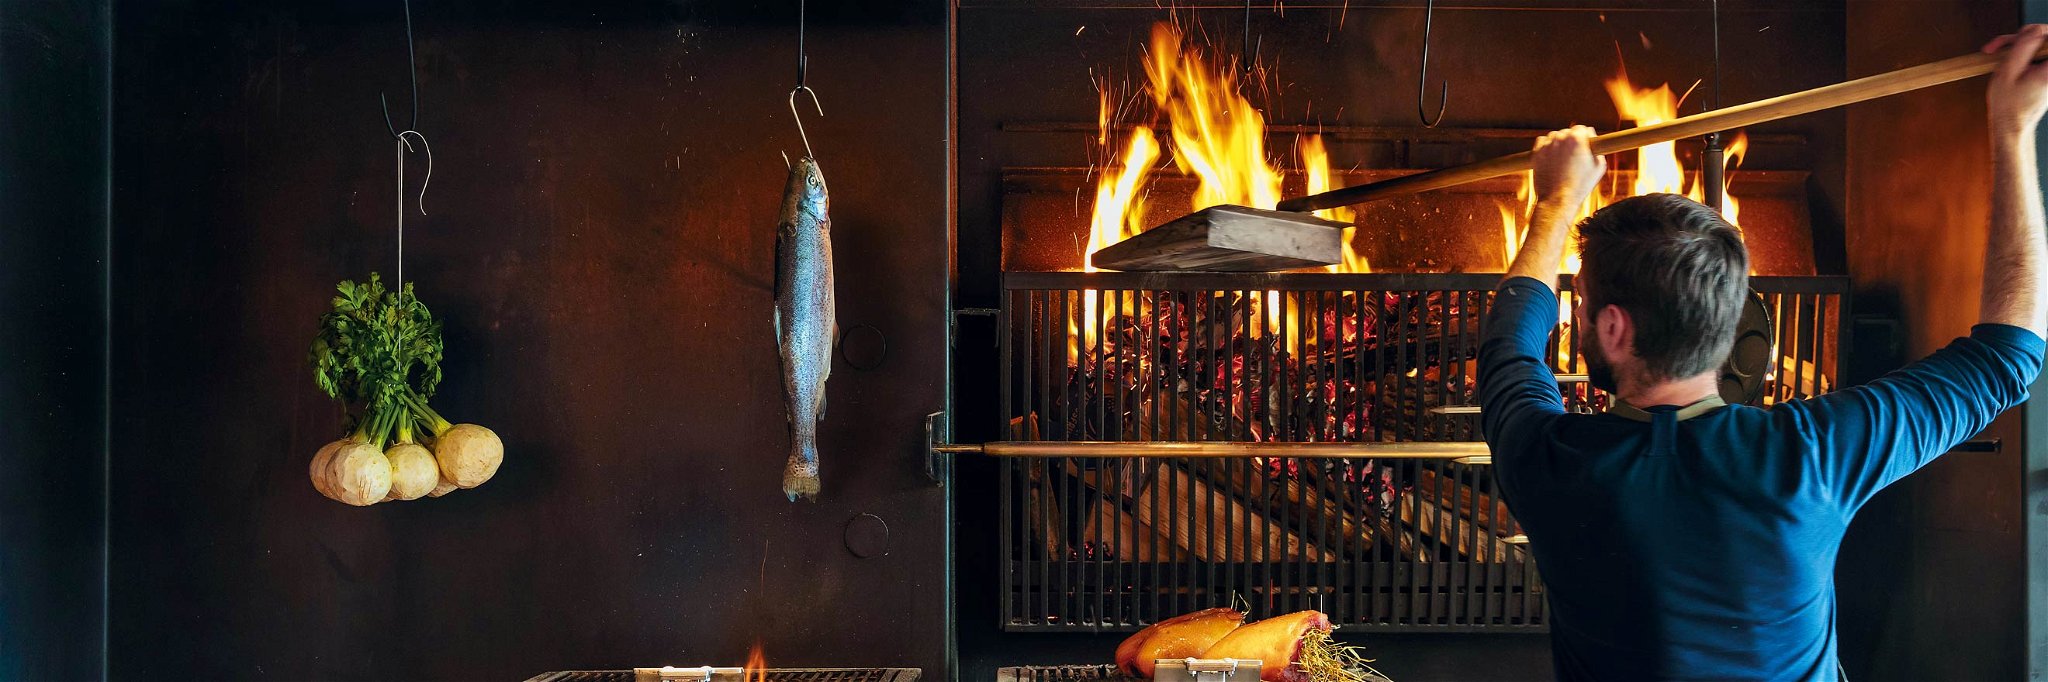 Das »Steirereck am Pogusch« der Gastronomen-Familie Reitbauer ist eine Bühne für die besten Erzeugnisse der Region. Zubereitet werden diese auch ganz traditionell am offenen Feuer.